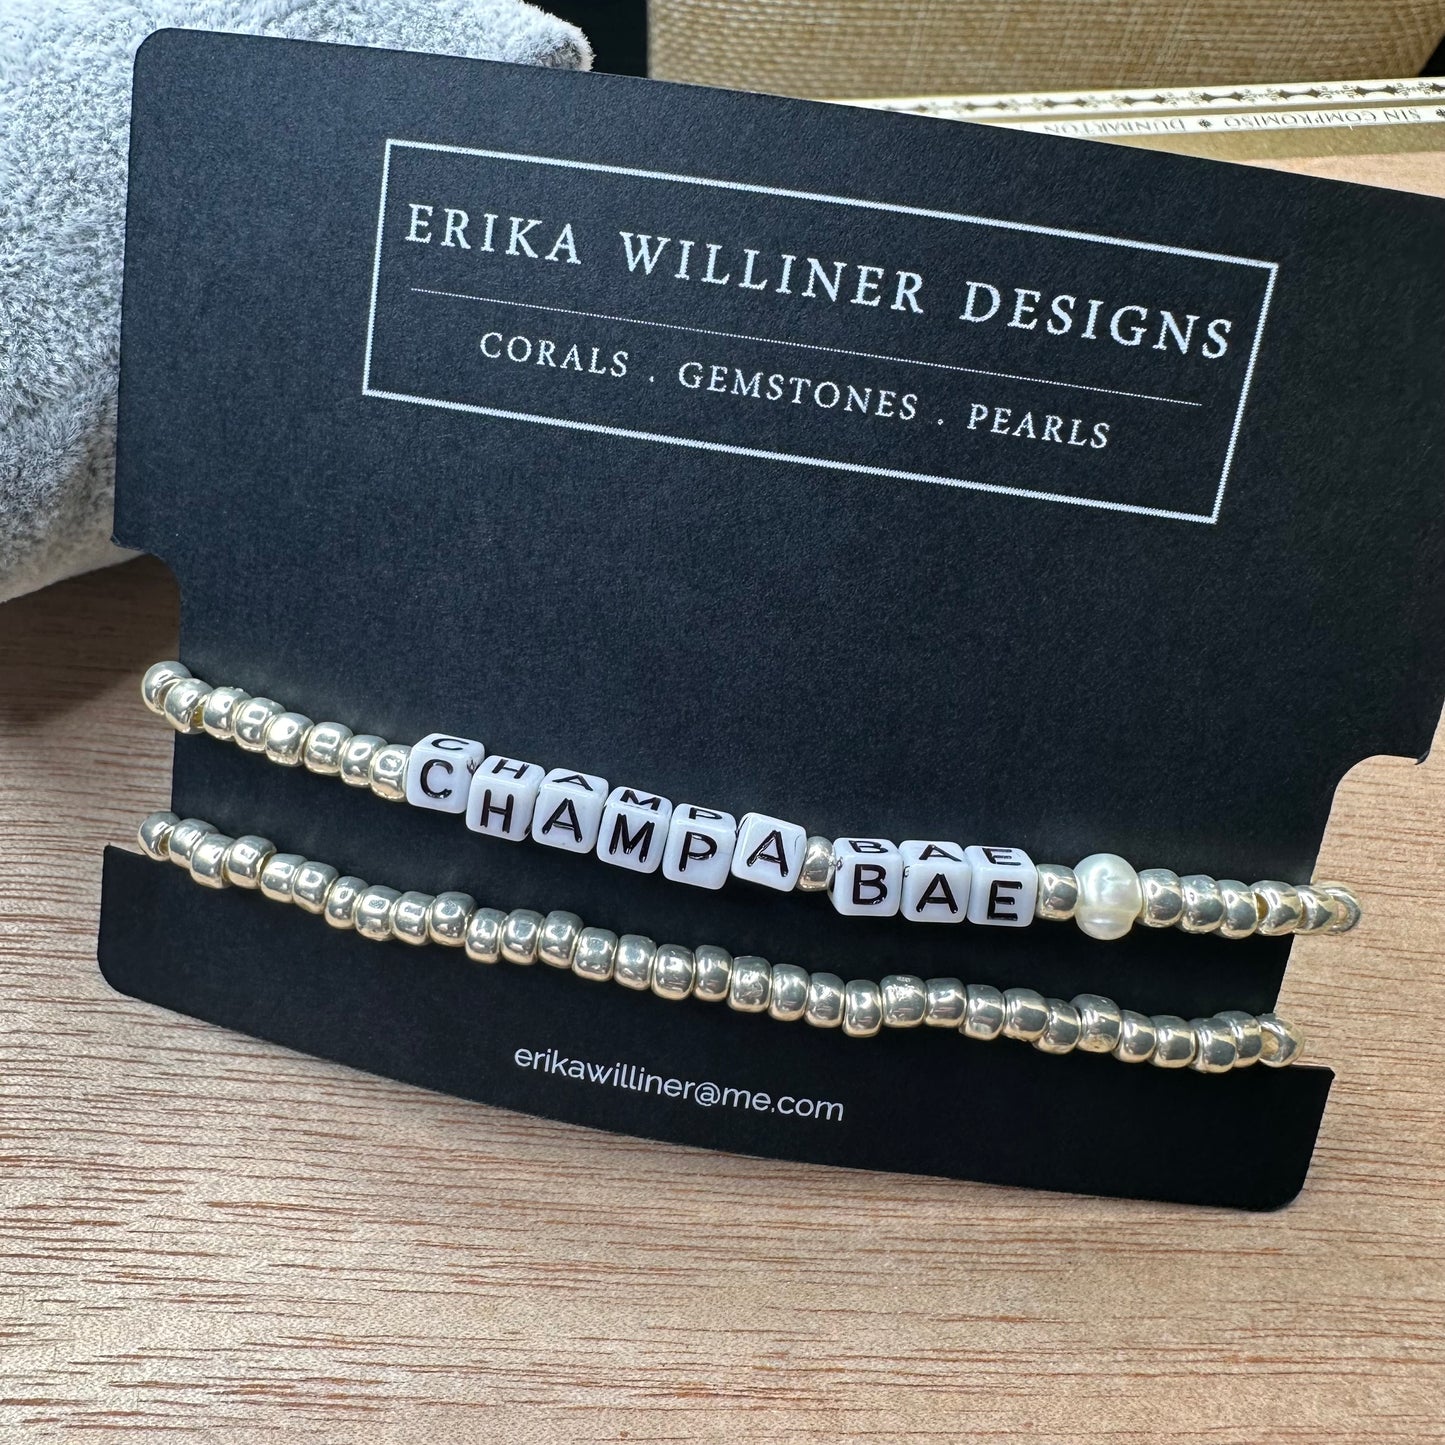 Erika Williner Designs - Words Stretchy Bracelets